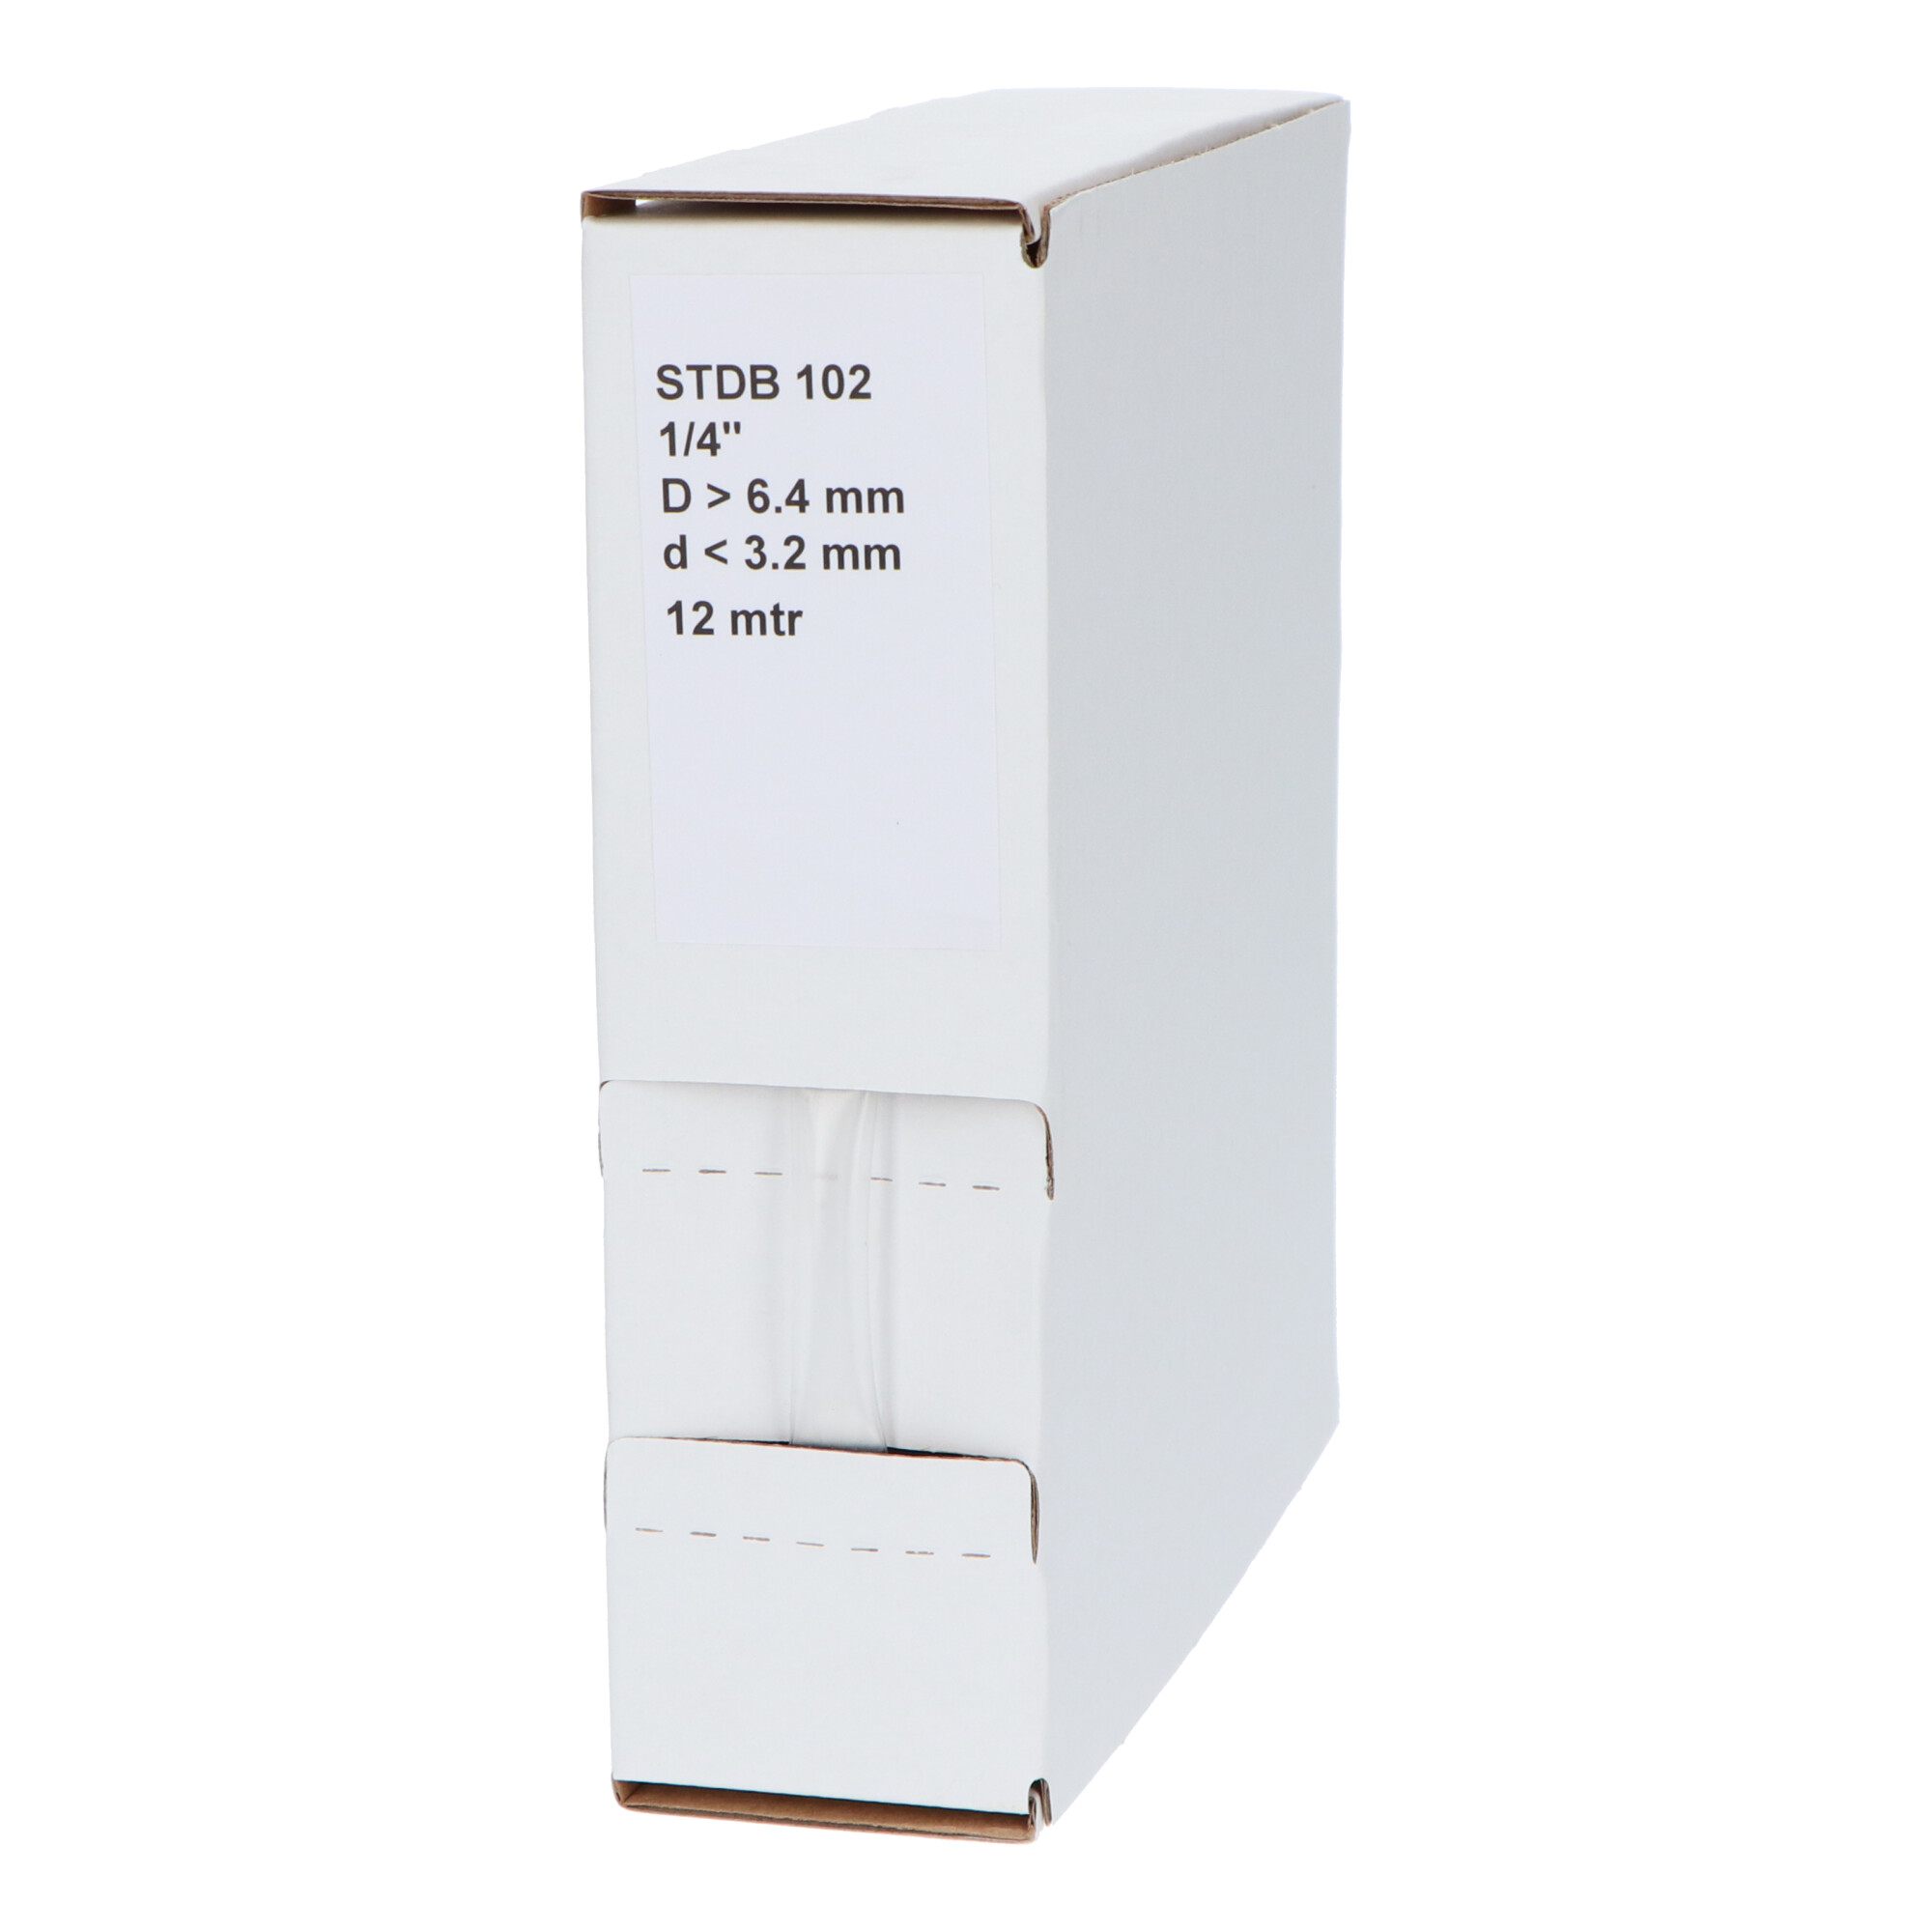 29-22002410G STDB 102 Krimpkous STDB 102 | 2:1 in dispenser box